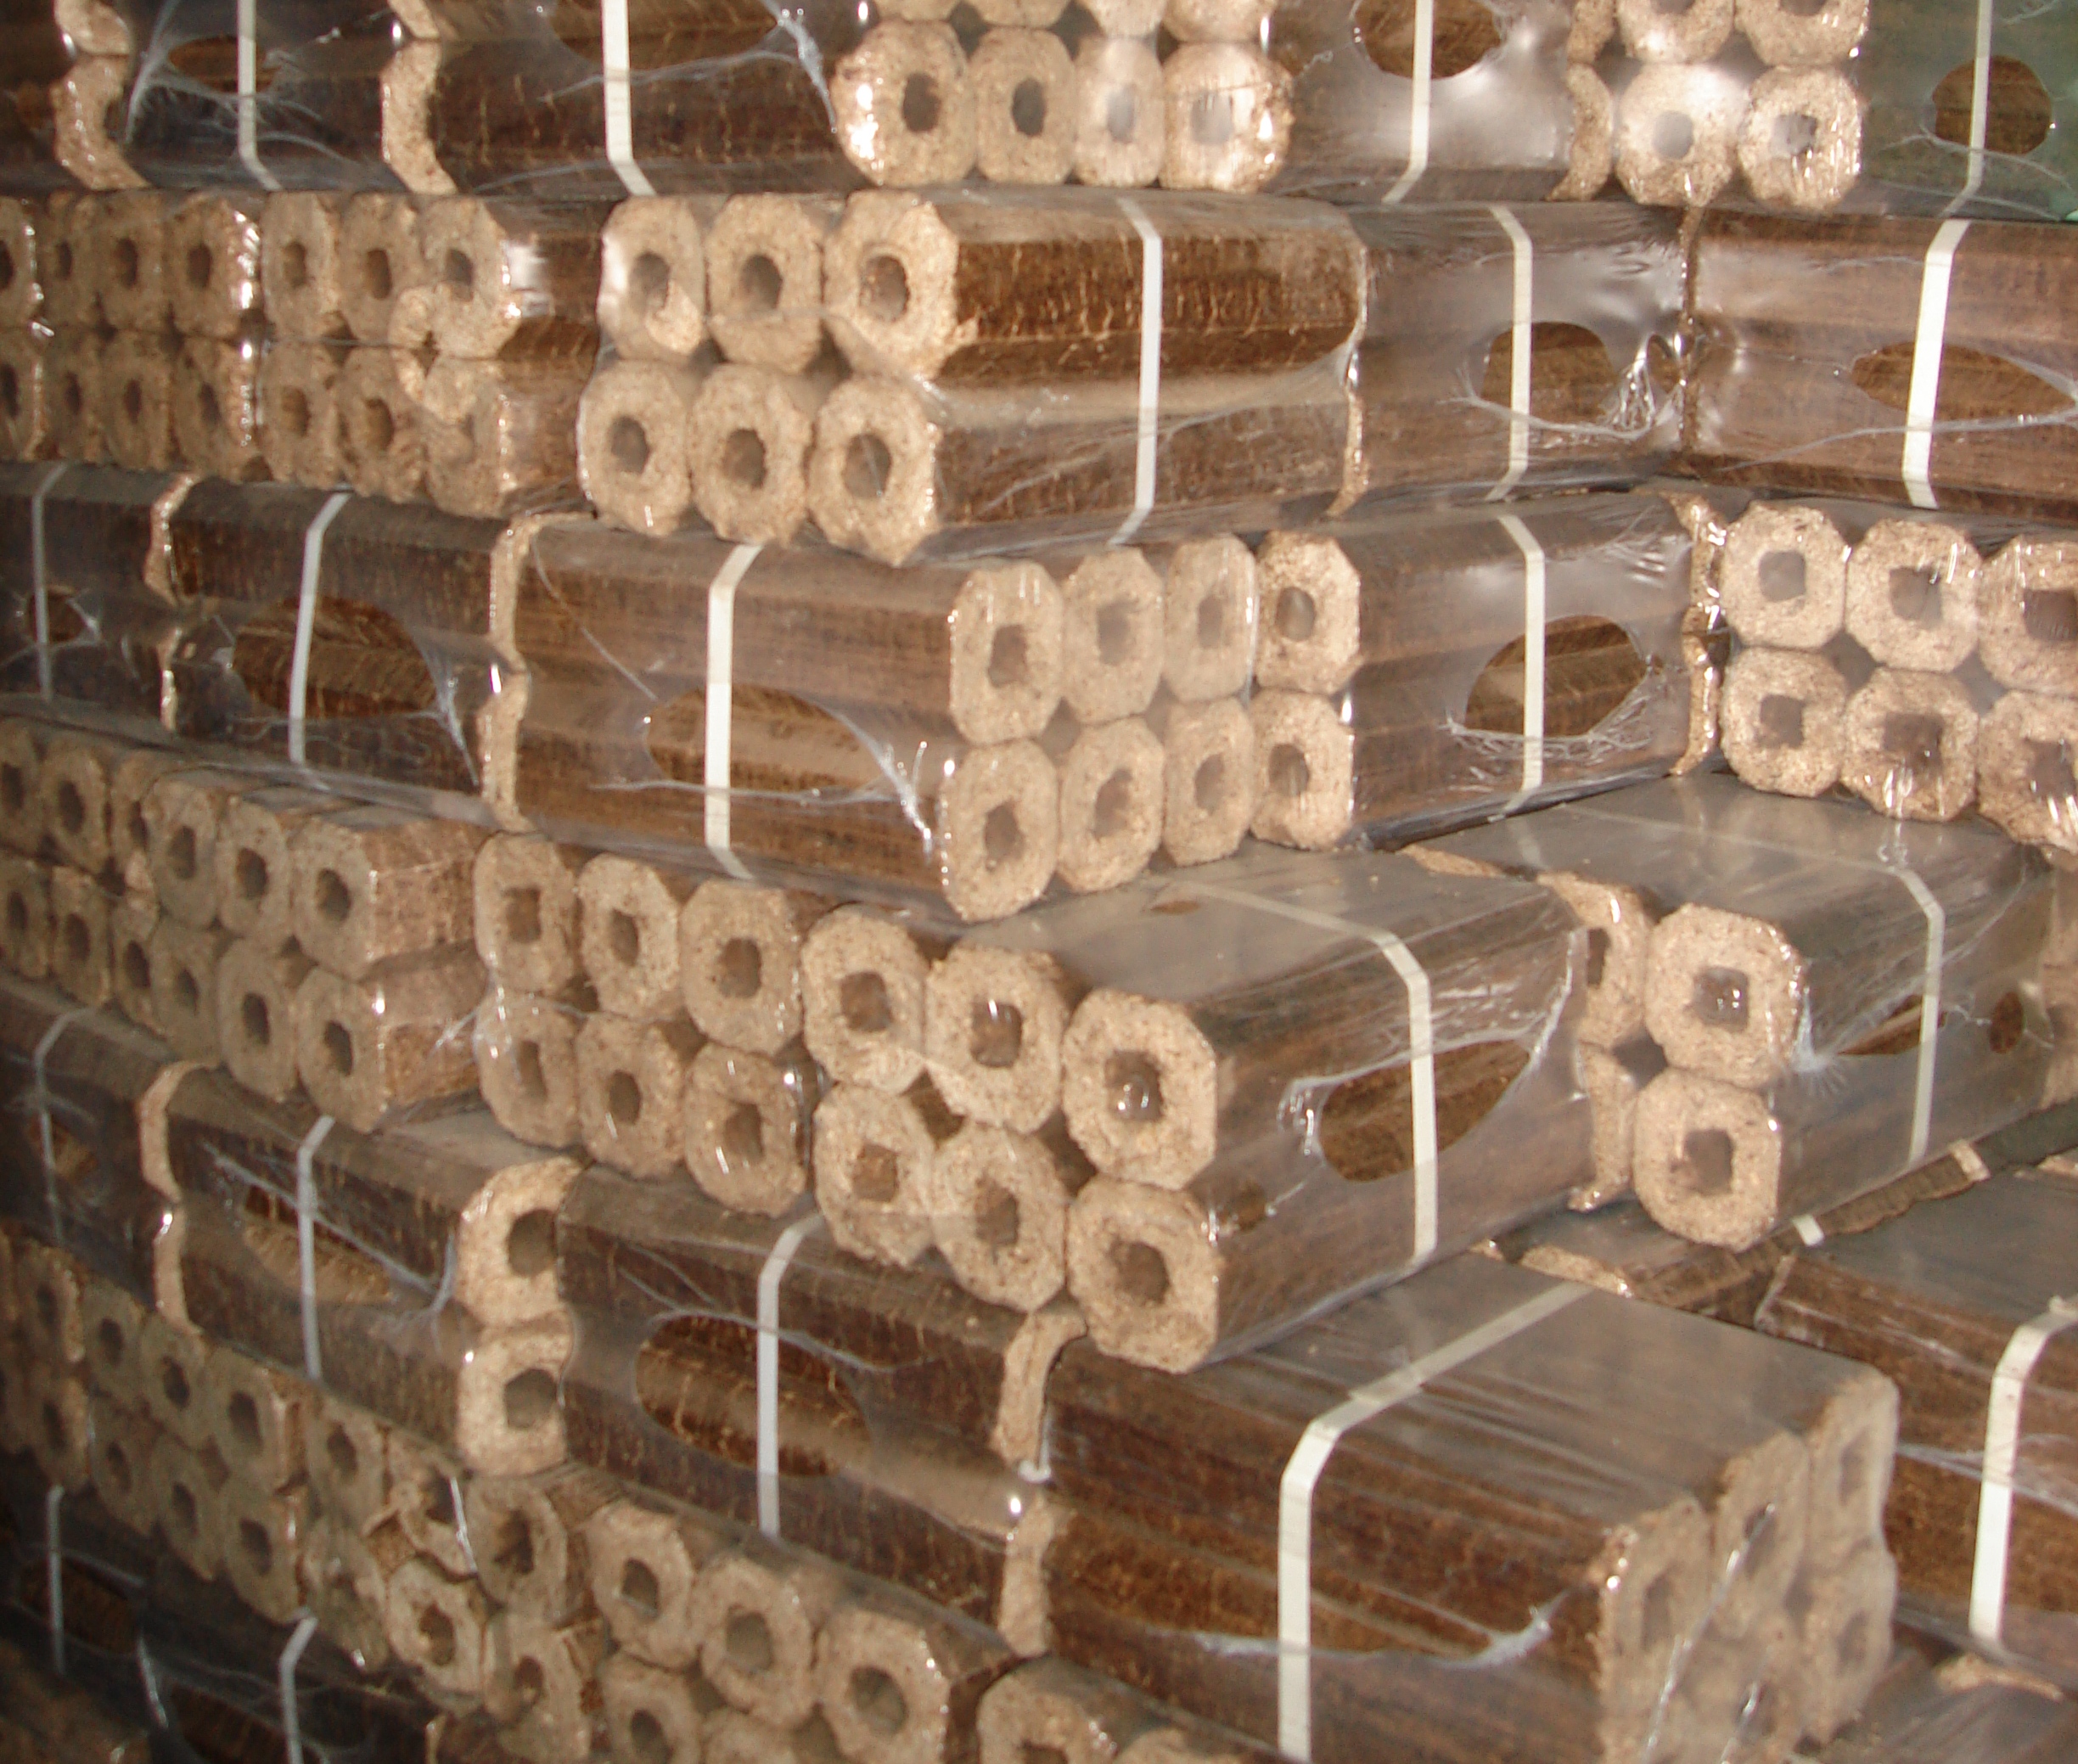 Топливные пеллеты куплю, производство древесные гранулы - Топливные .